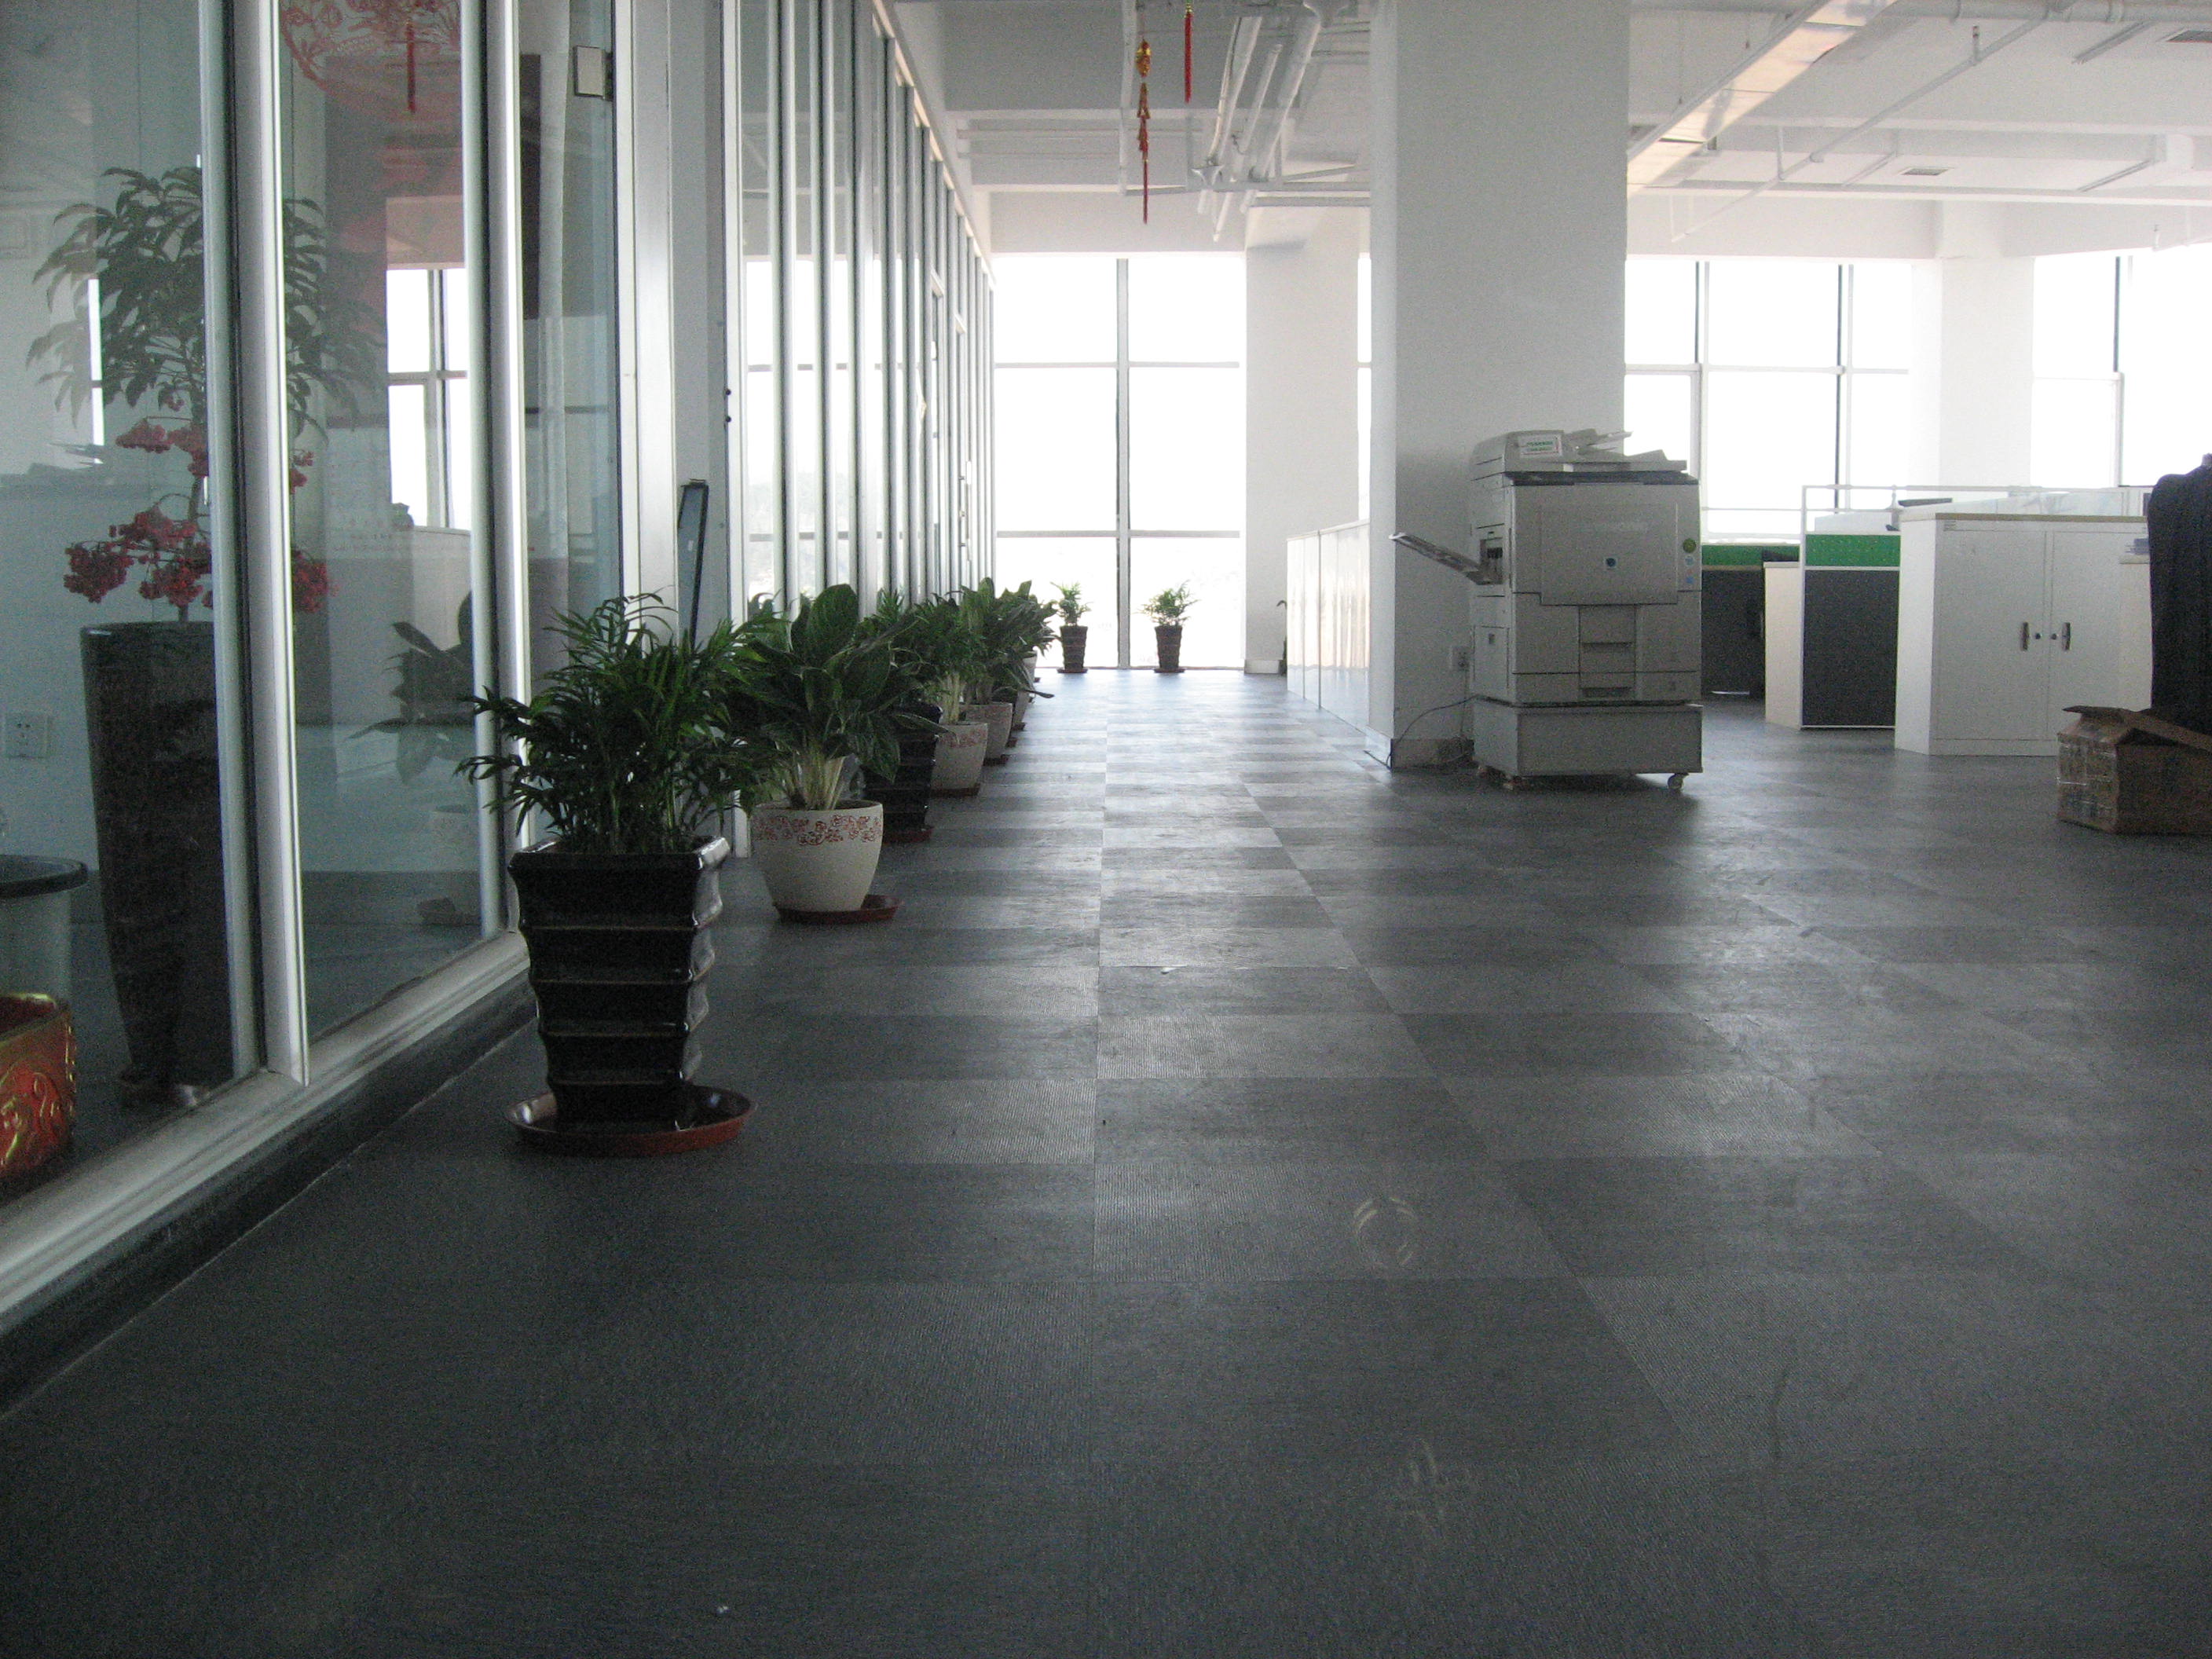 地胶板应用非常广泛,应用在办公楼,学校,健身房,幼儿园等场所,尤其在